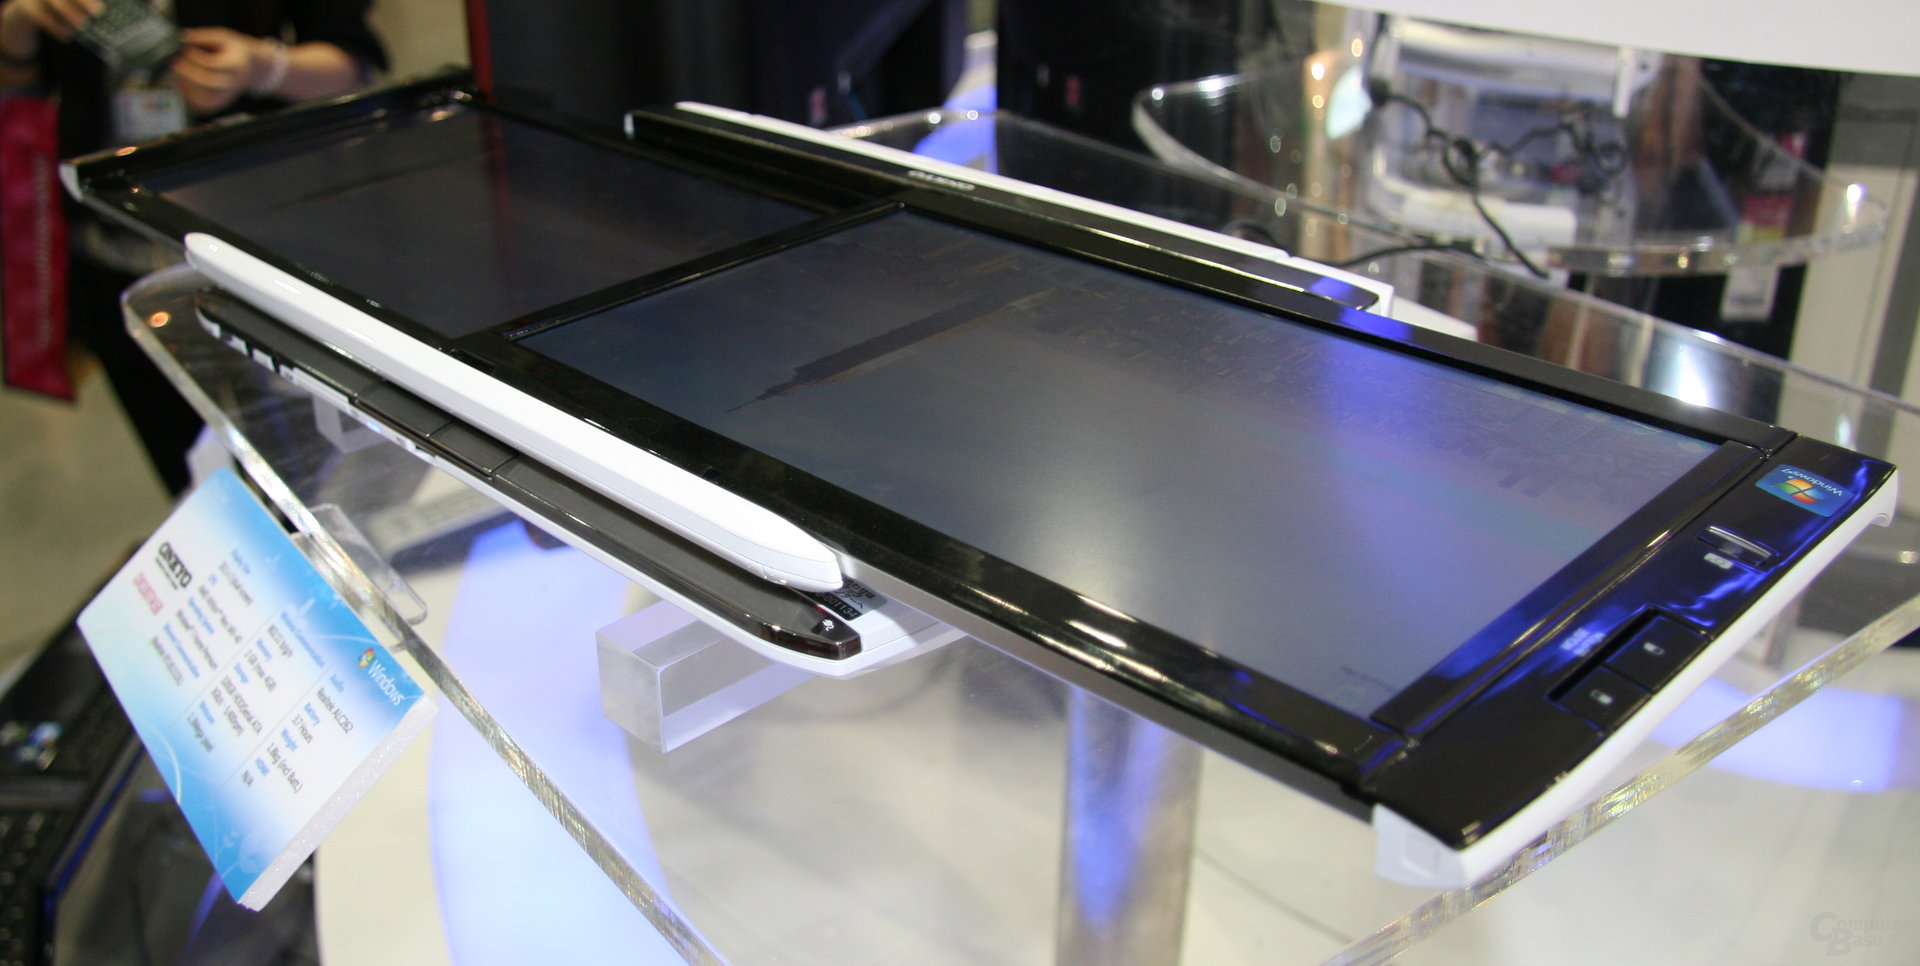 Onkyo-Notebook mit zwei 10,1-Zoll-Bildschirmen